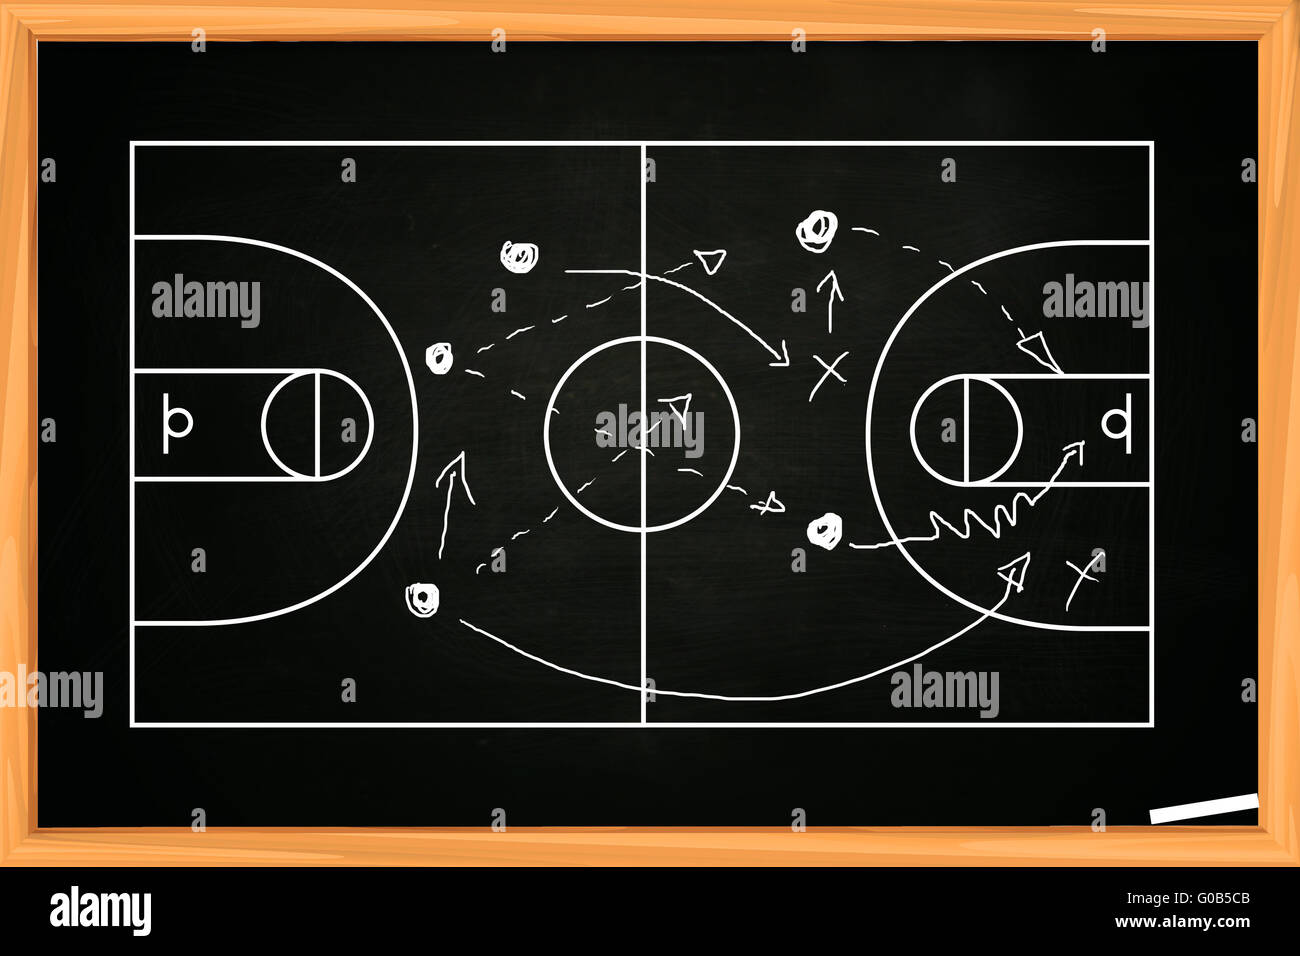 Pizarra de dibujo juego de baloncesto estrategia sobre blackboard  Fotografía de stock - Alamy